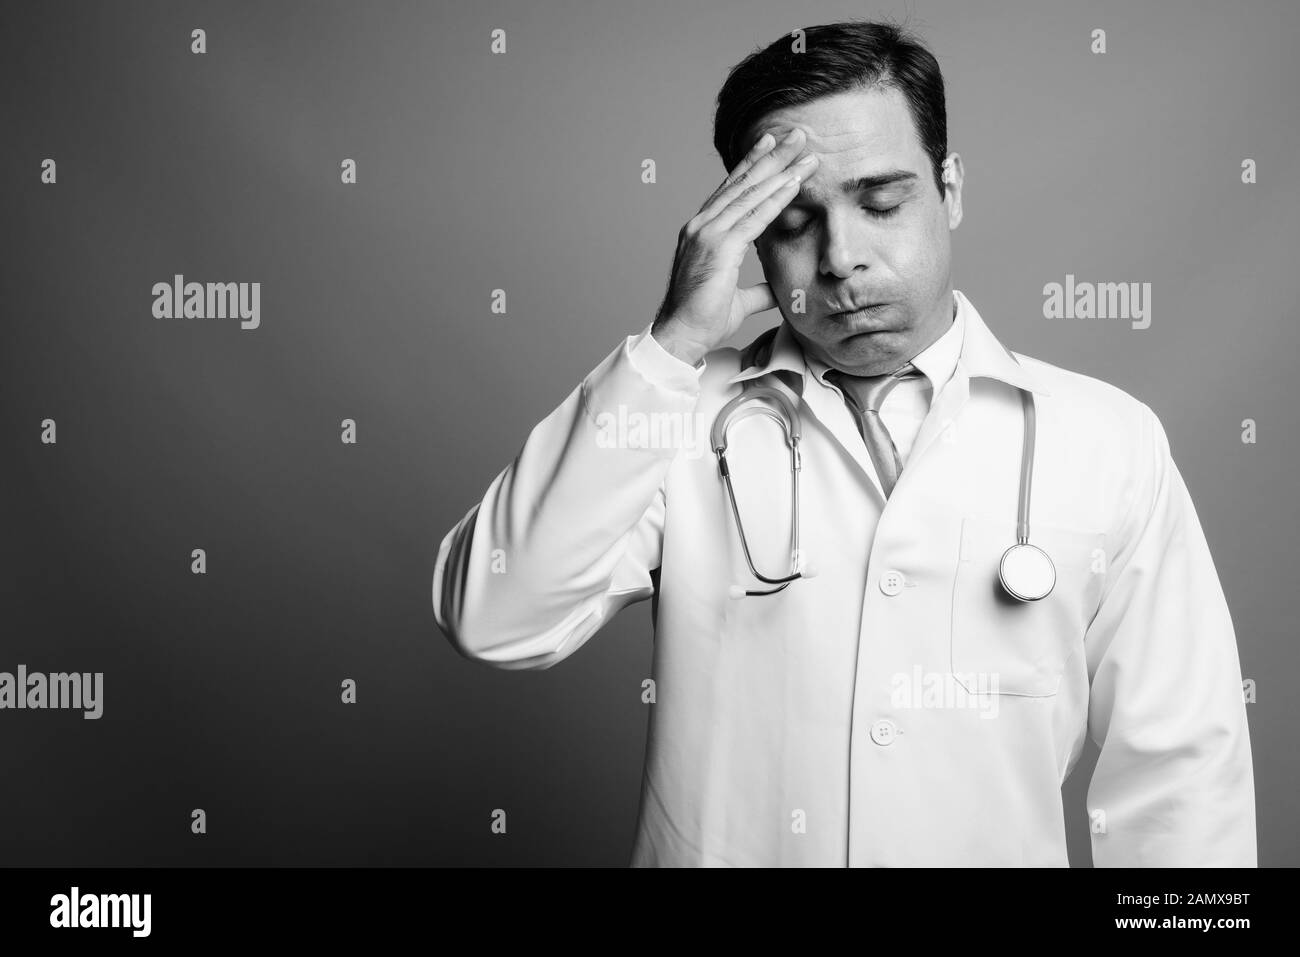 Bello il persiano uomo medico contro uno sfondo grigio Foto Stock